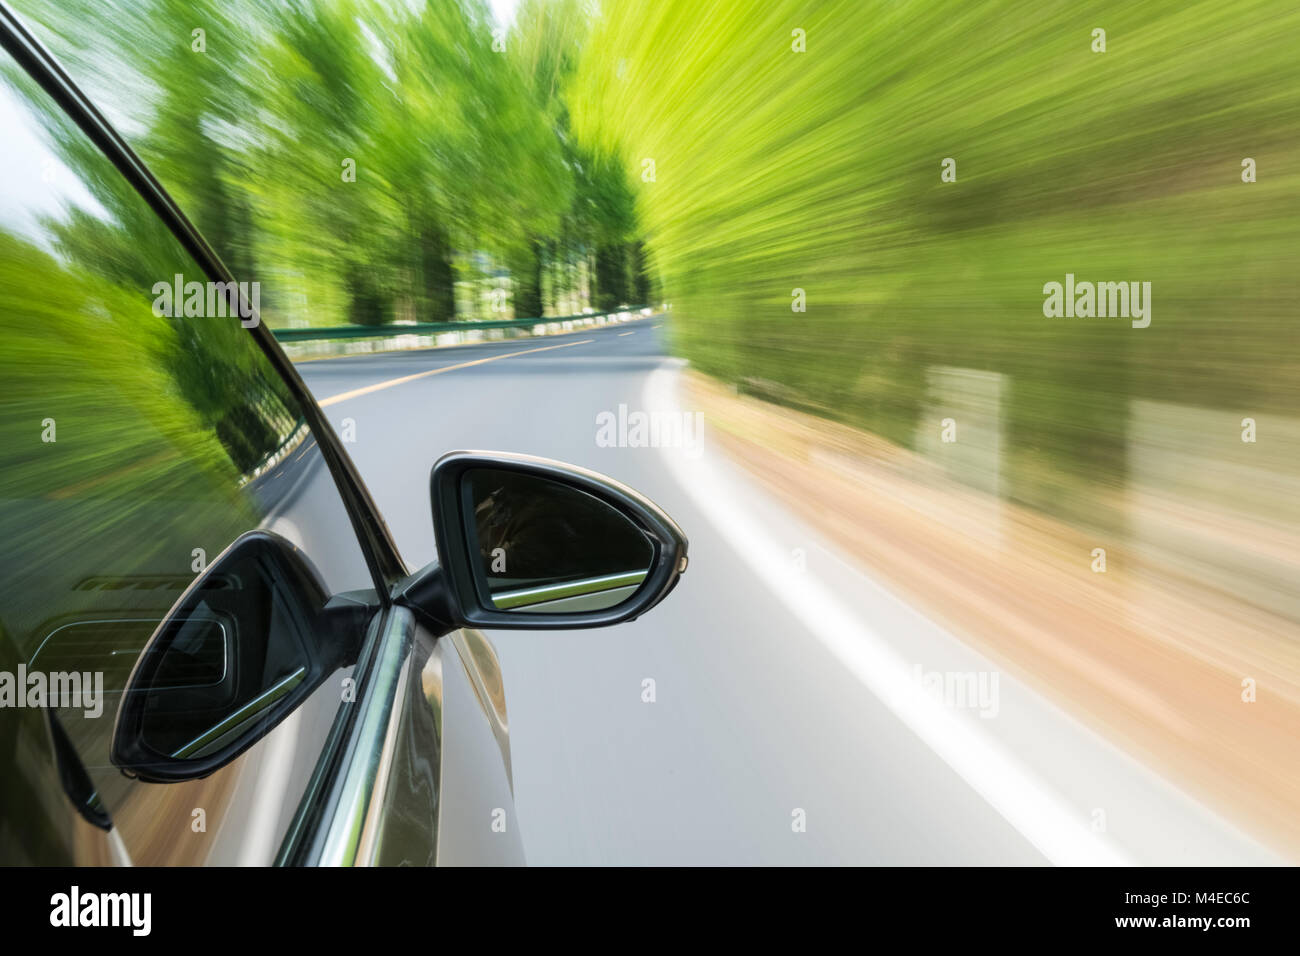 Voiture roulant avec green motion blur Banque D'Images